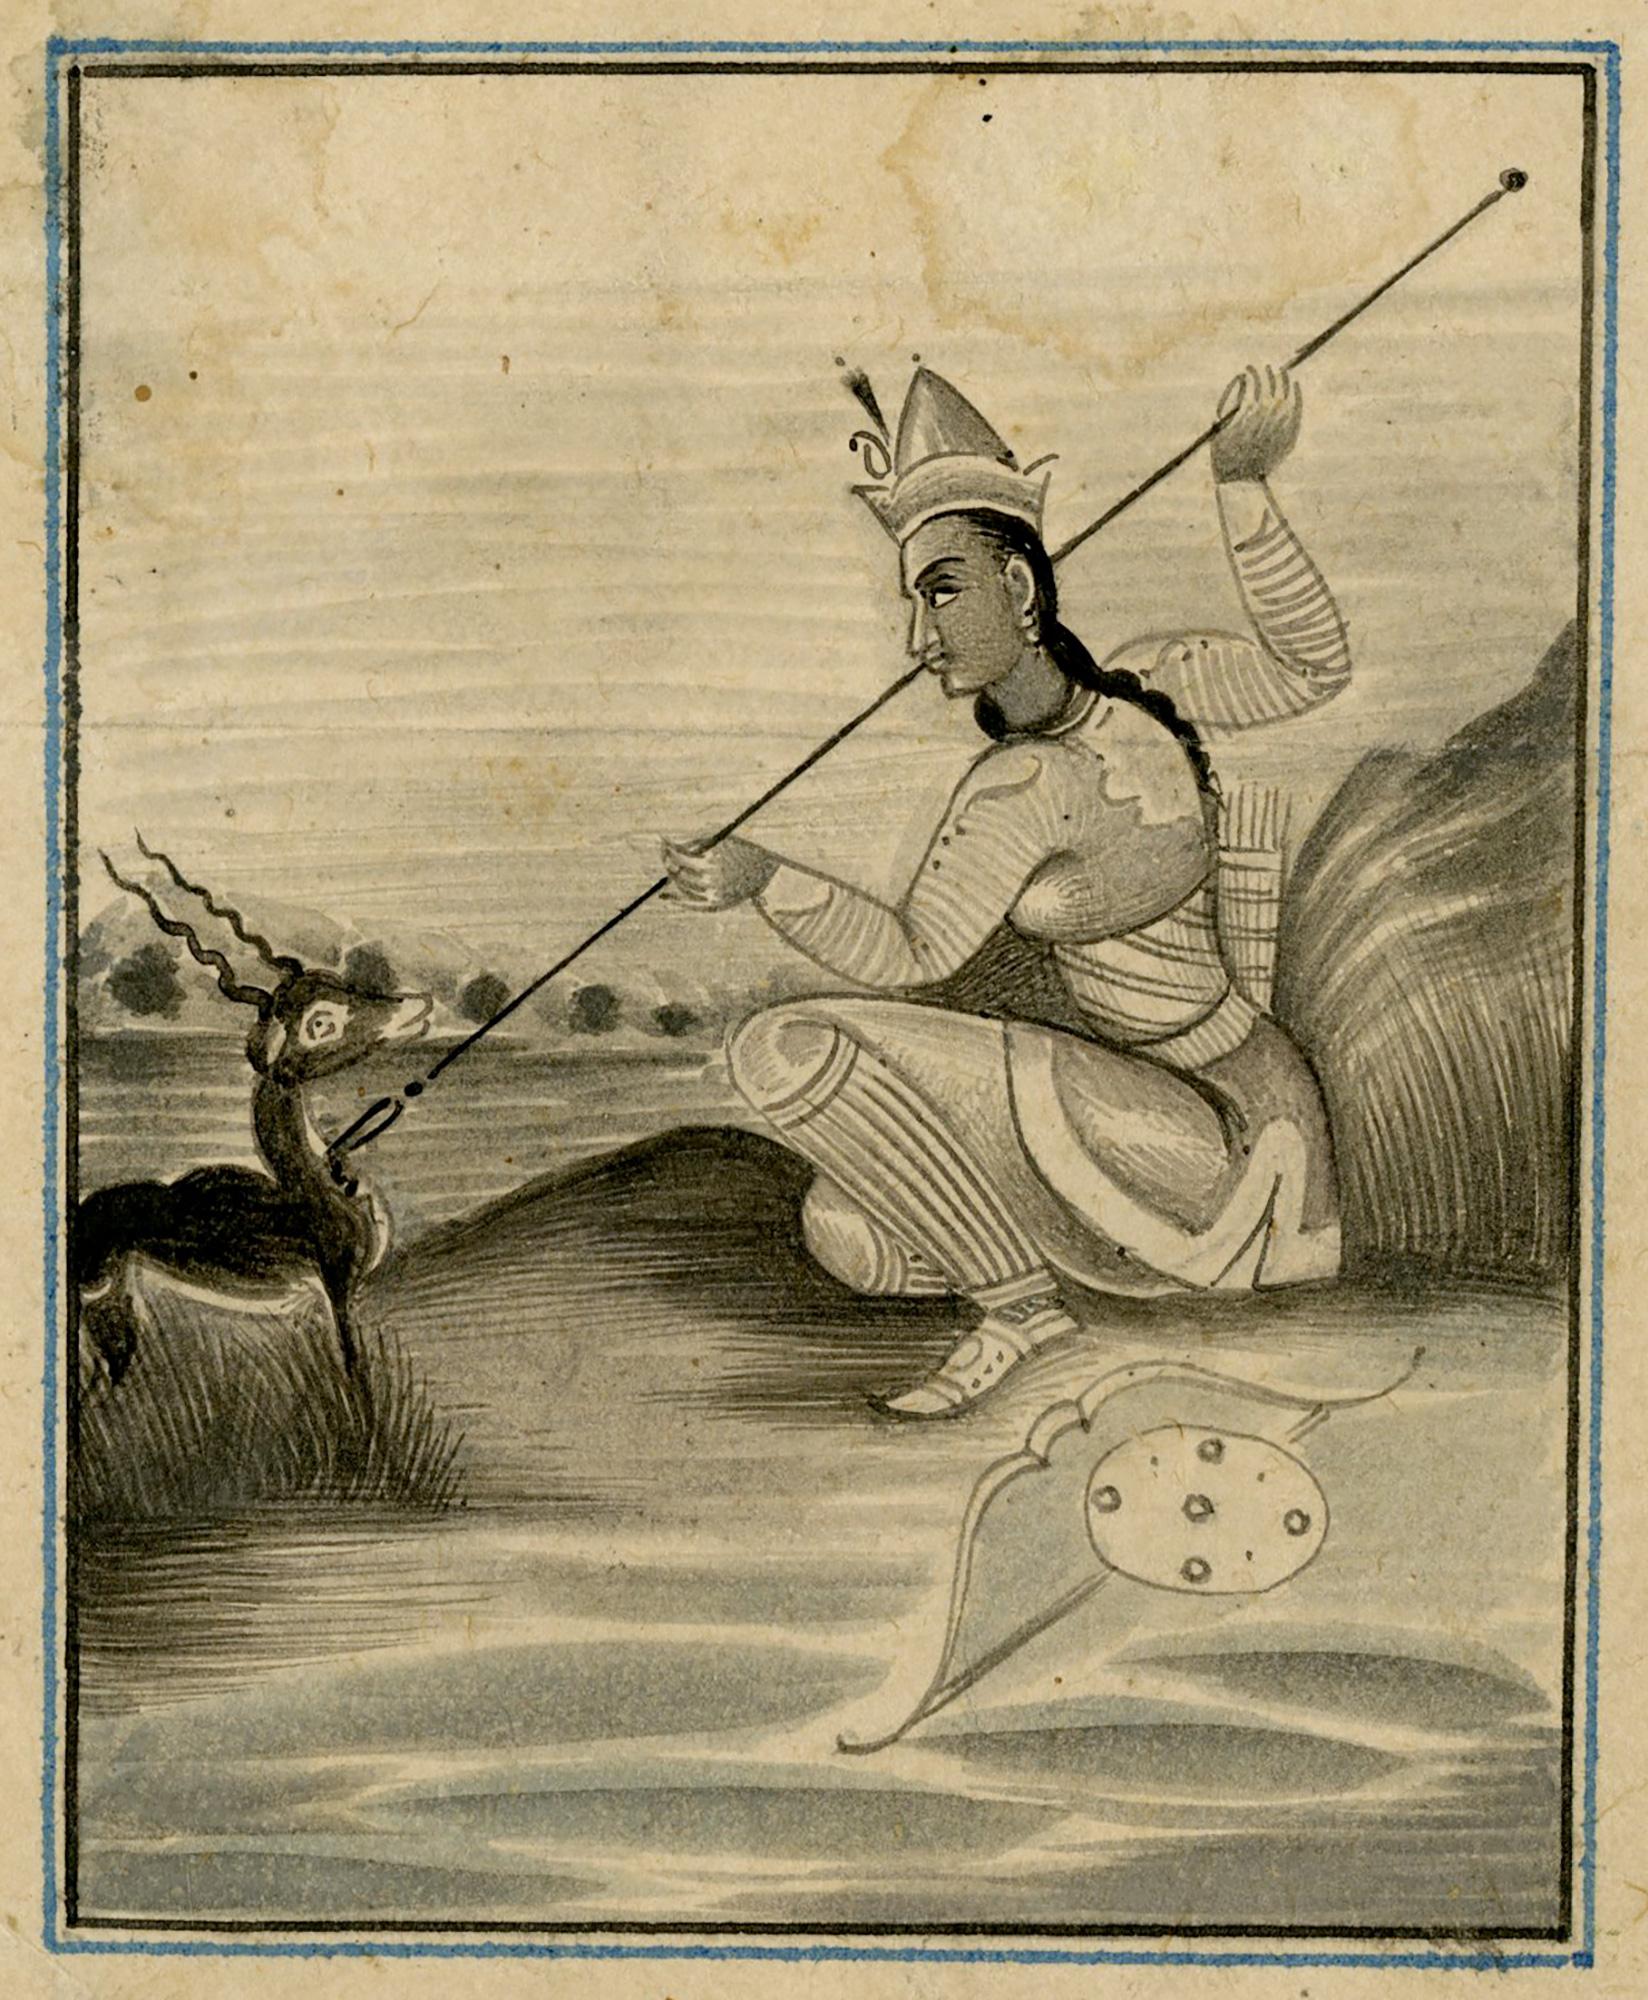 Portrait Unknown -  École moghole du 19e siècle, l'impératrice Nur Jahan chasseant une gazelle indienne.